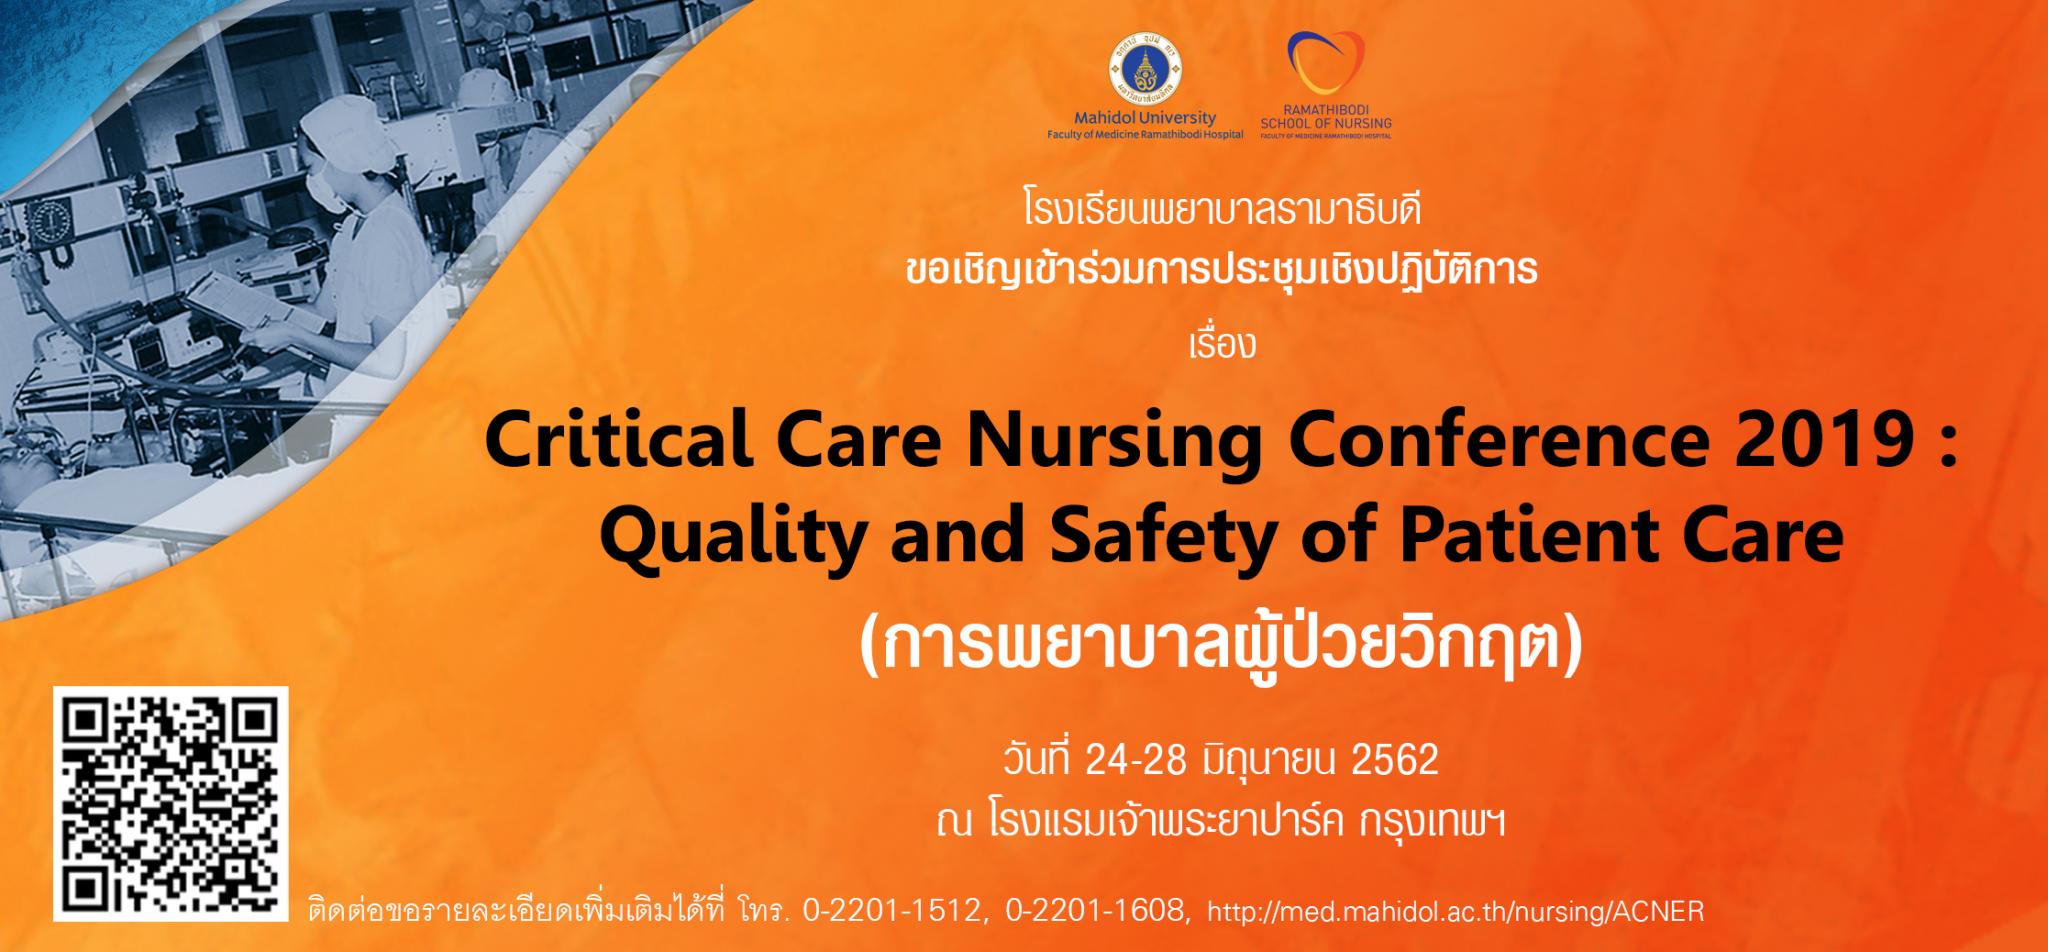 ขอเชิญเข้าร่วมการประชุมวิชาการเรื่อง Critical Care Nursing Conference 2019: Quality and Safety of Patient Care การพยาบาลผู้ป่วยวิกฤต